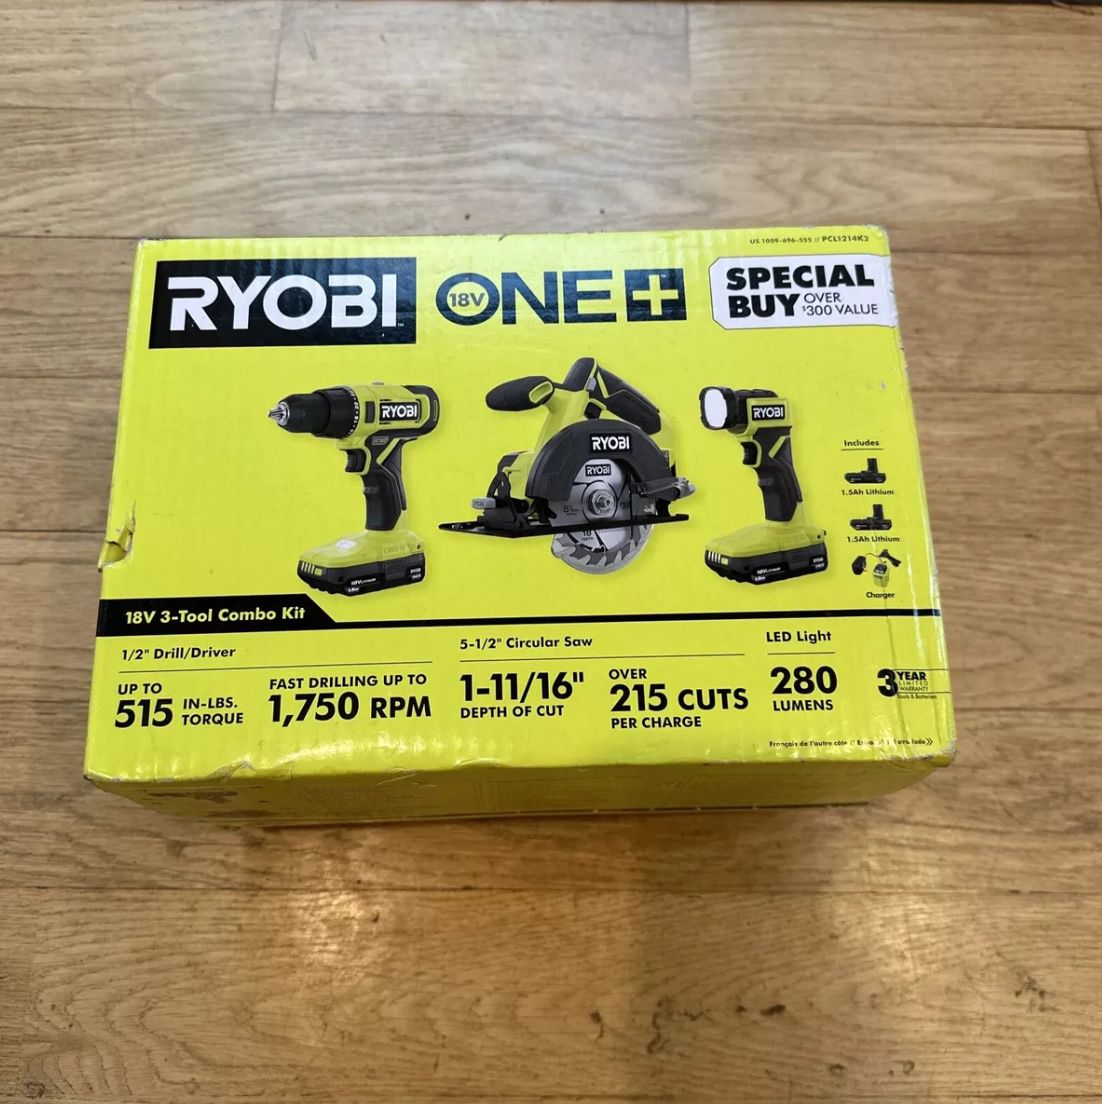 Ryobi one + 18v 3 tool combo kit